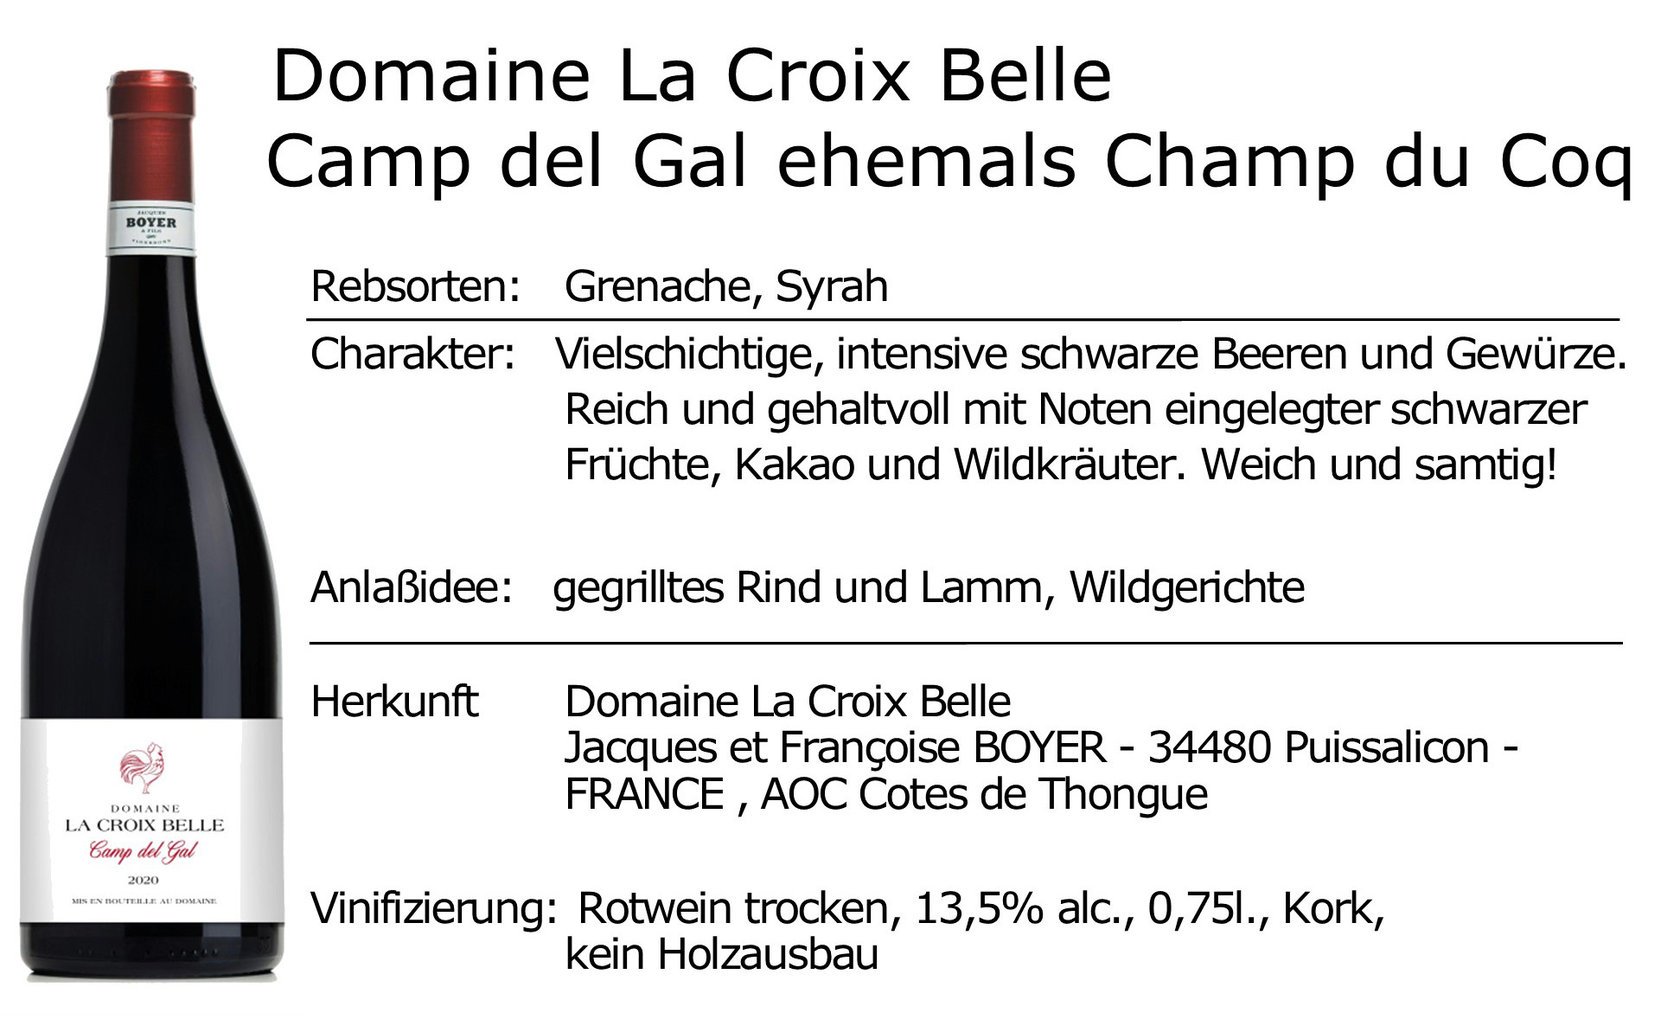 Domaine La Croix Belle Camp del Gal 2020